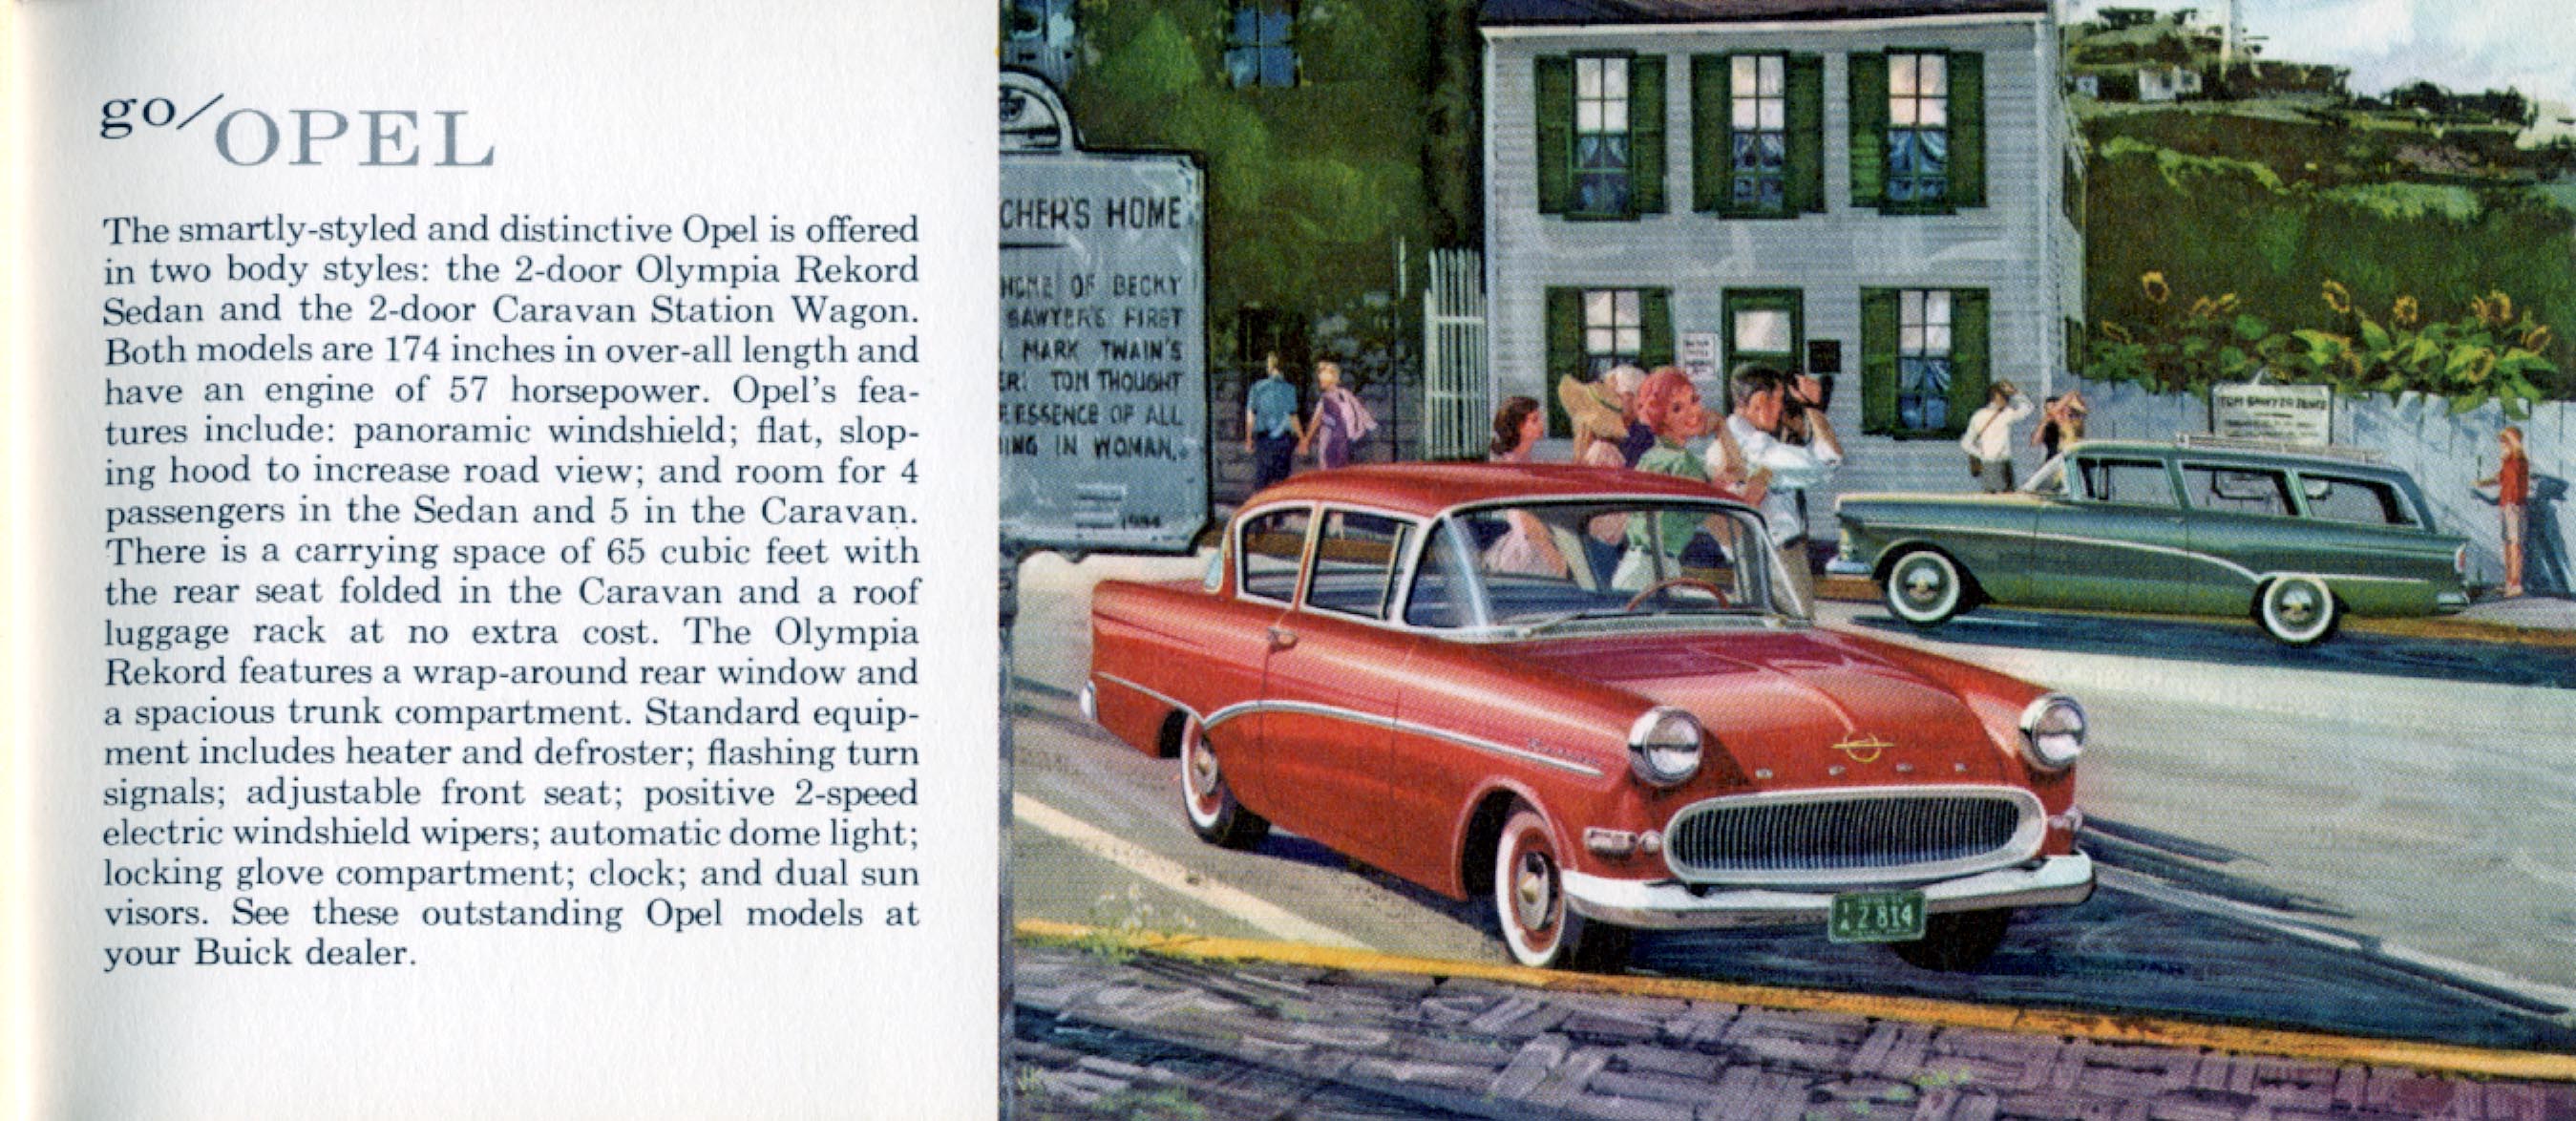 General_Motors_for_1960-37